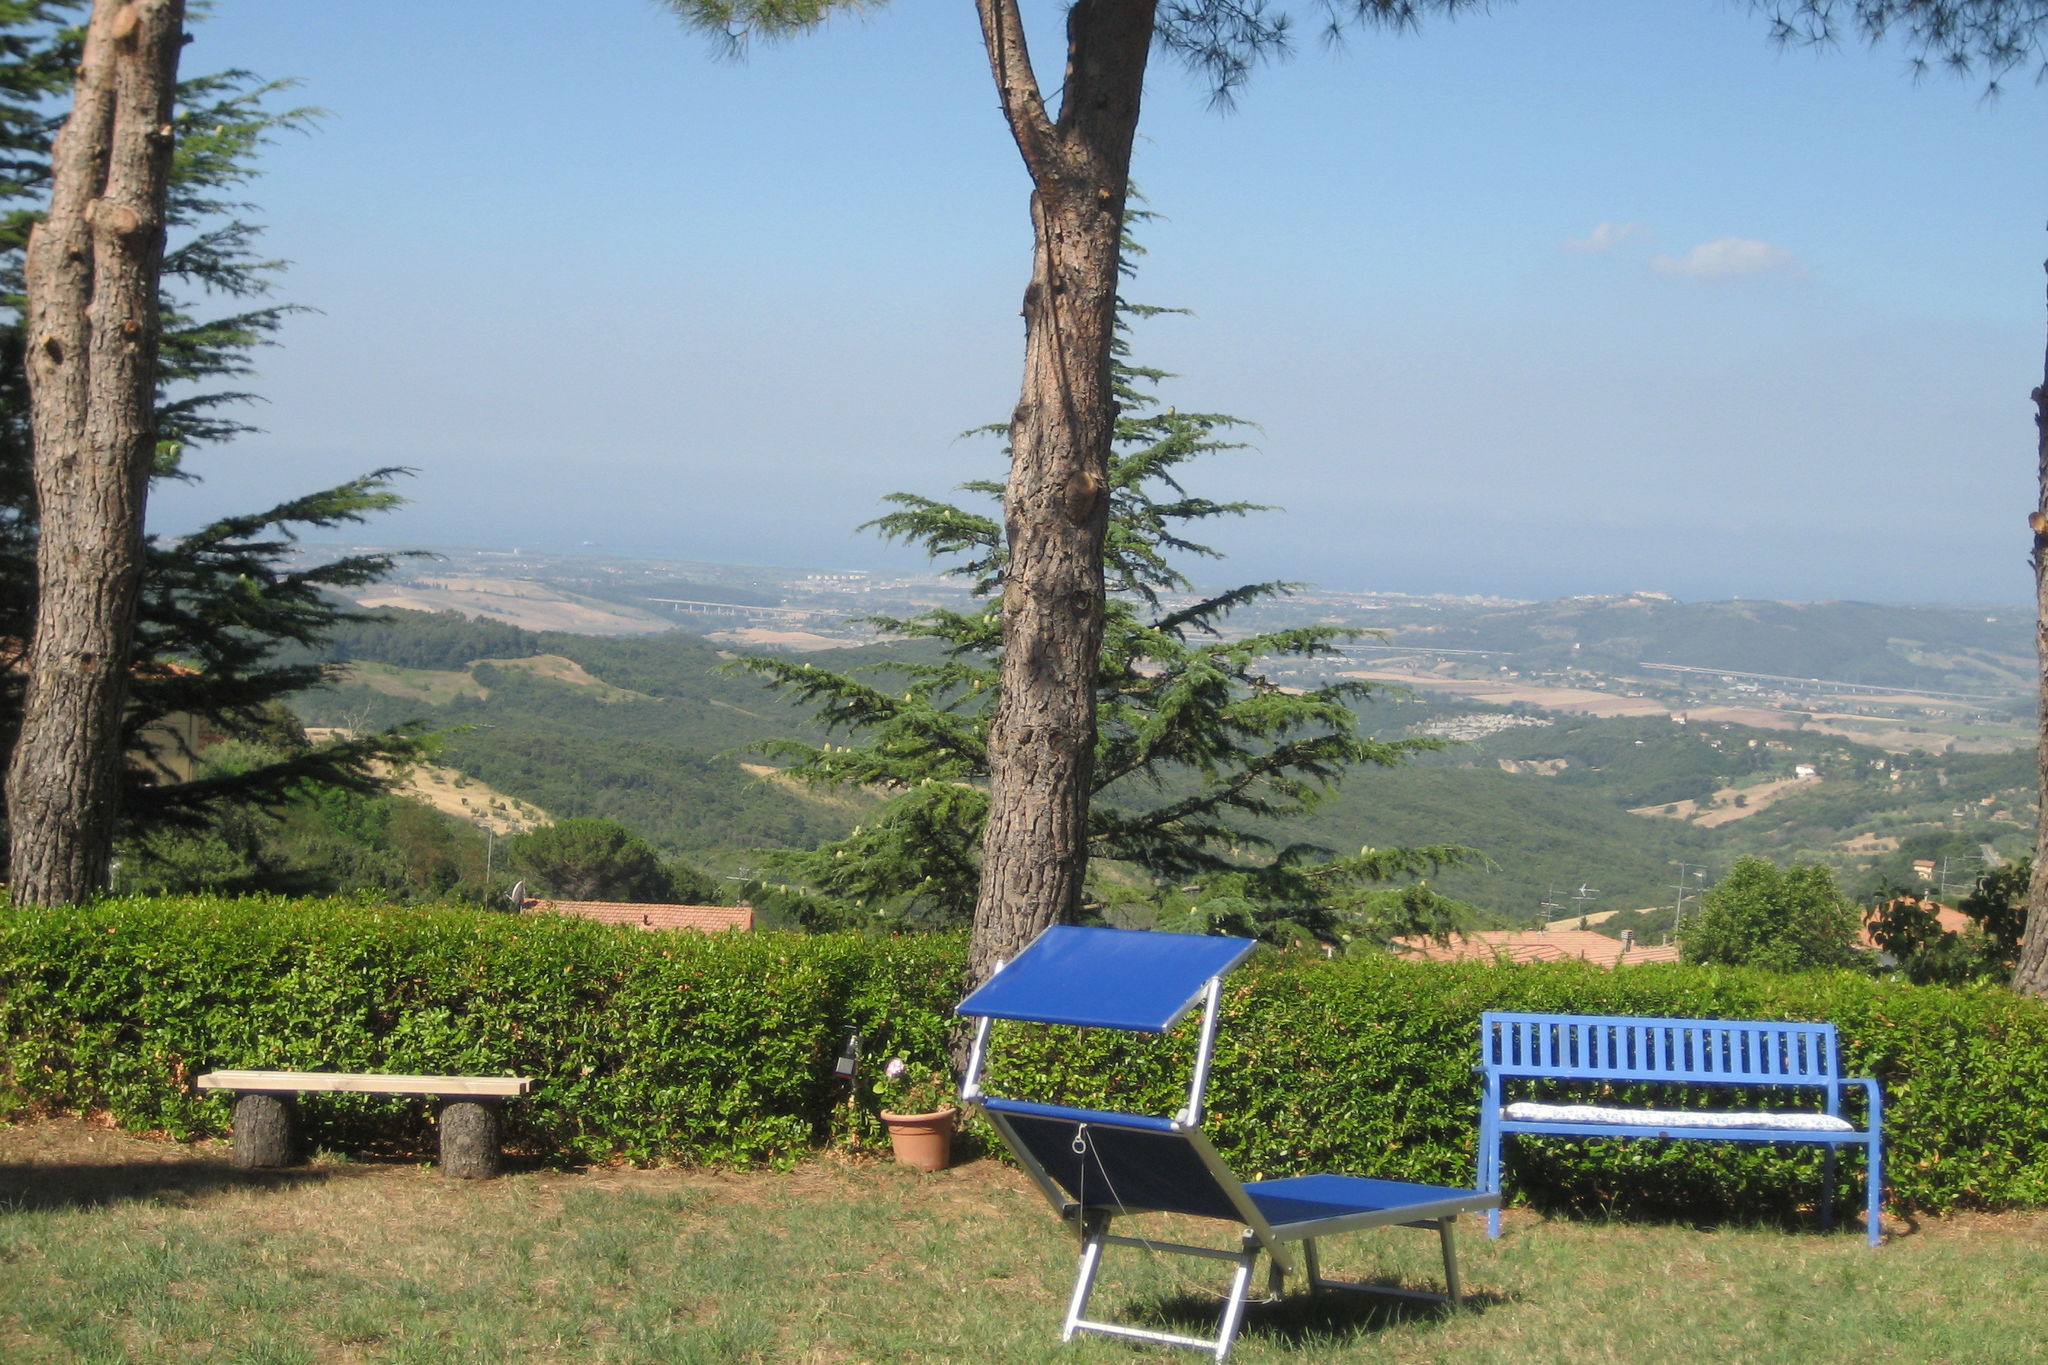 Een vakantie vol excursies maar ook rust tussen de Toscaanse heuvels